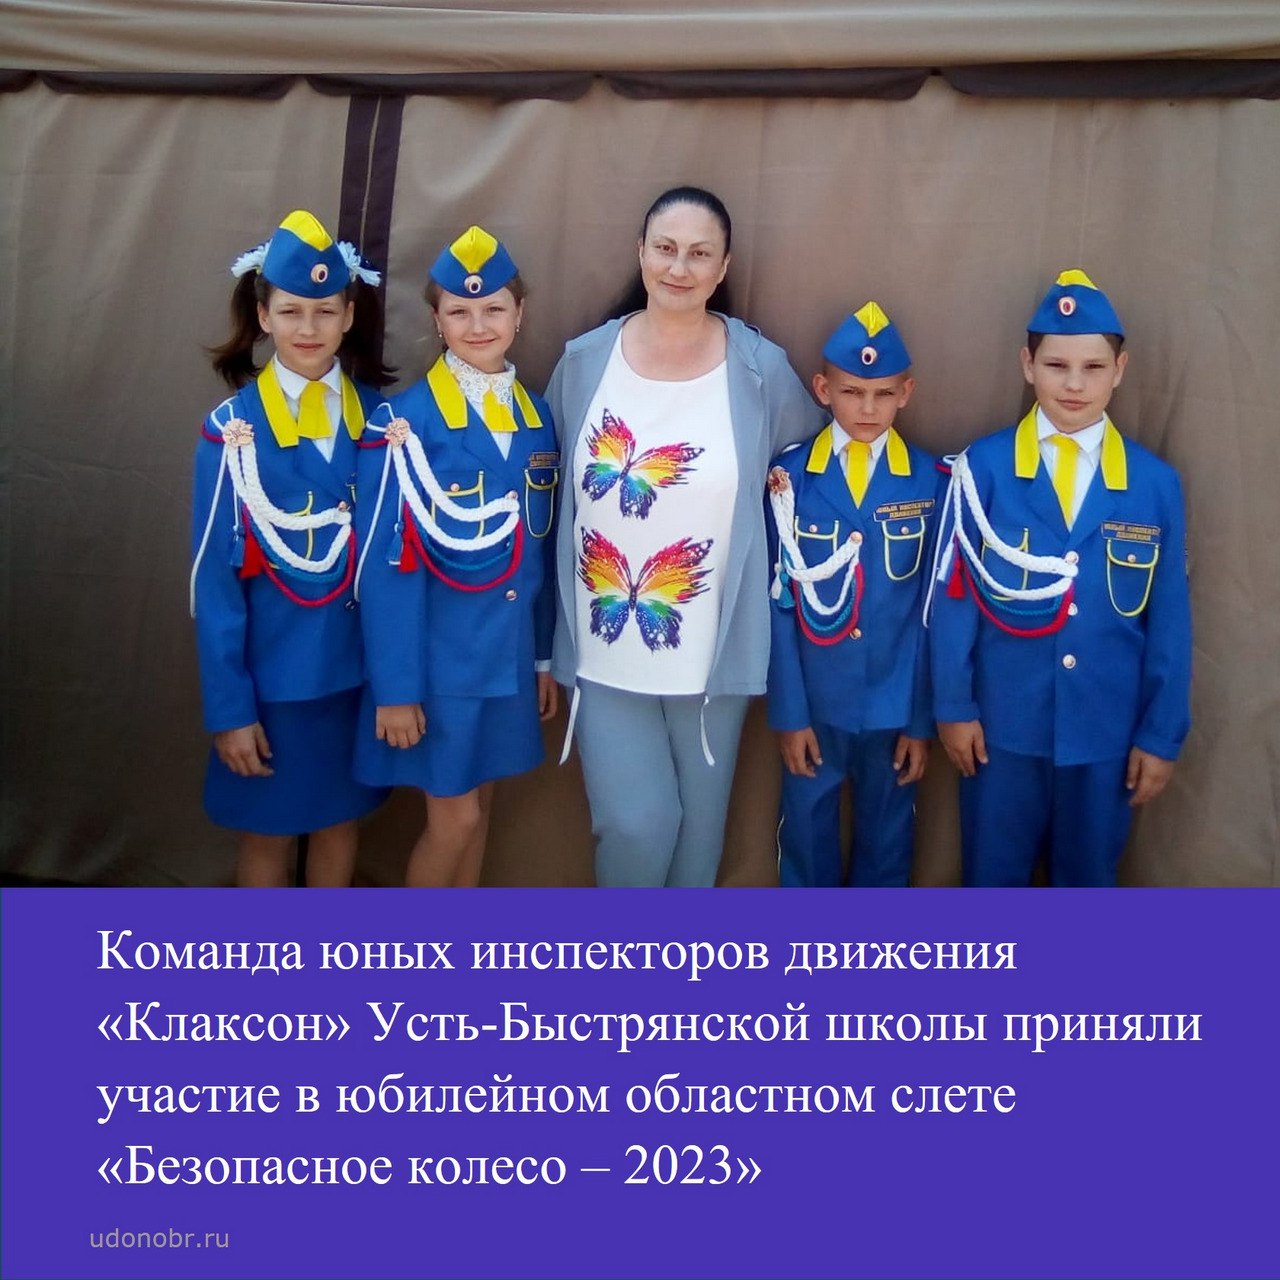 Команды юных инспекторов движения «Клаксон» Усть-Быстрянской школы приняли участие в юбилейном областном слете «Безопасное колесо – 2023»